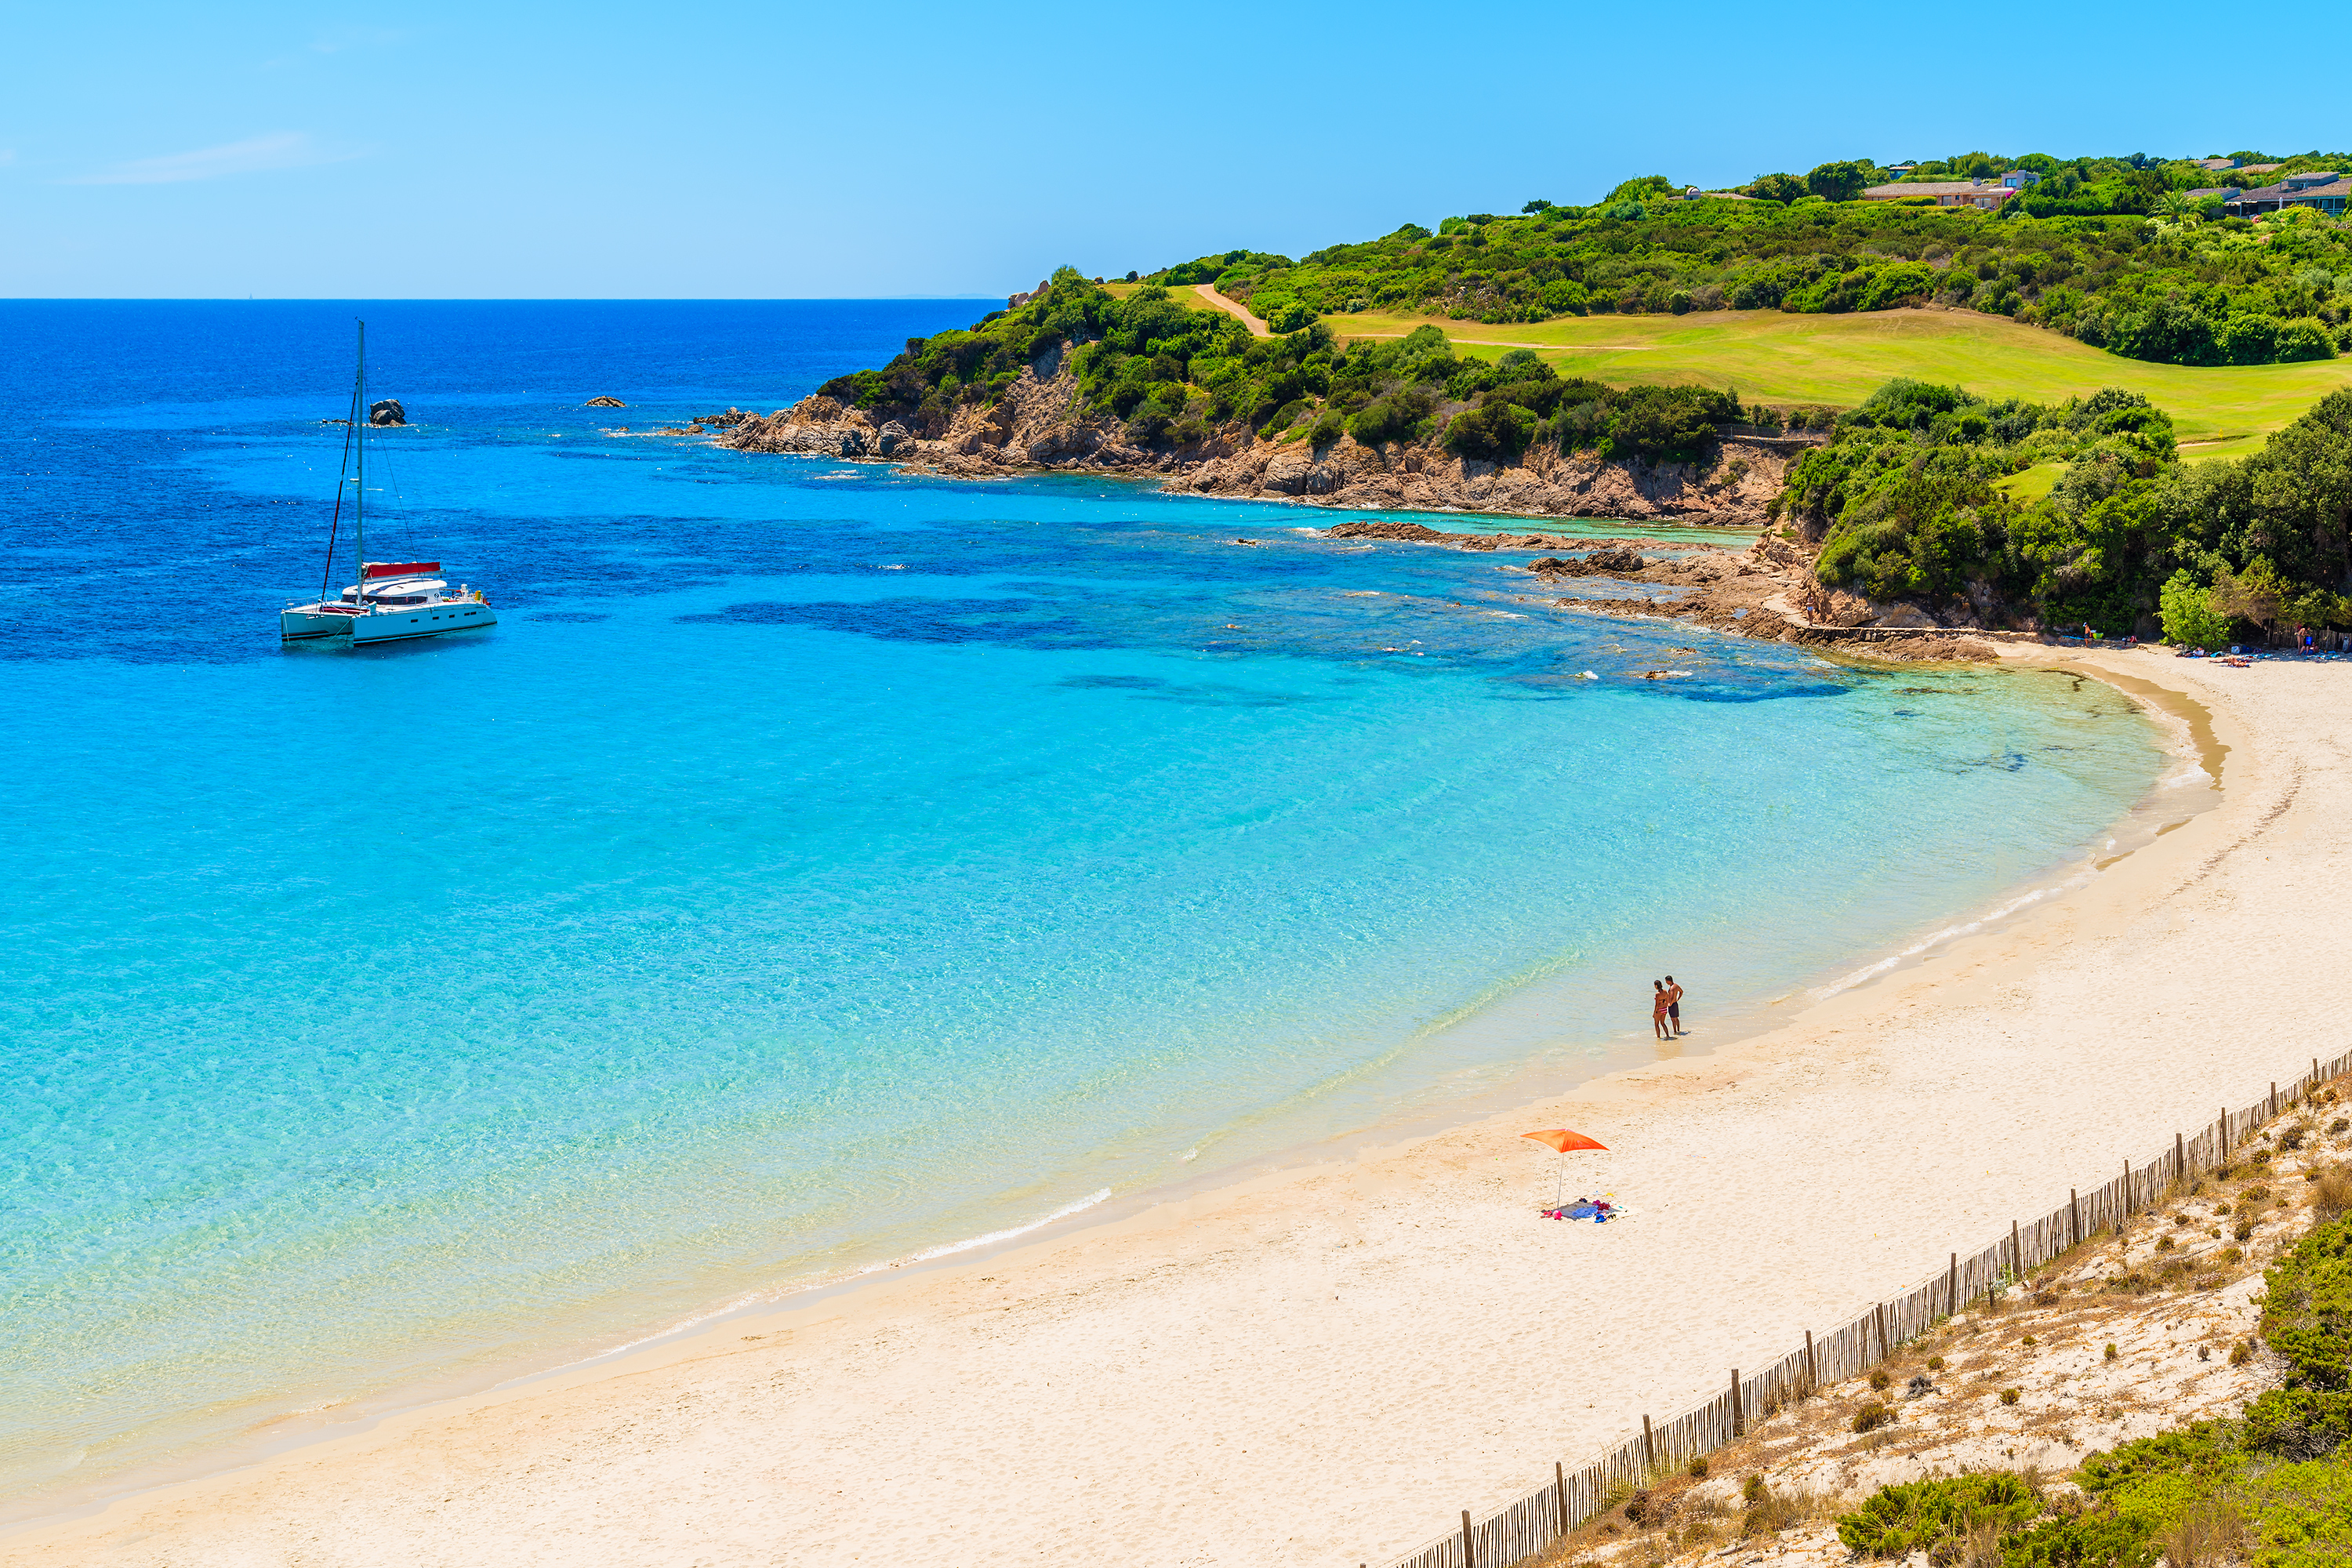 Plage Corse sable blanc et eau tourquoise moby_plage-corse-sable-fin-eau-tourquoise Une plage Corse avec son eau turquoise, son sable fin doré et une zone verdoyante.